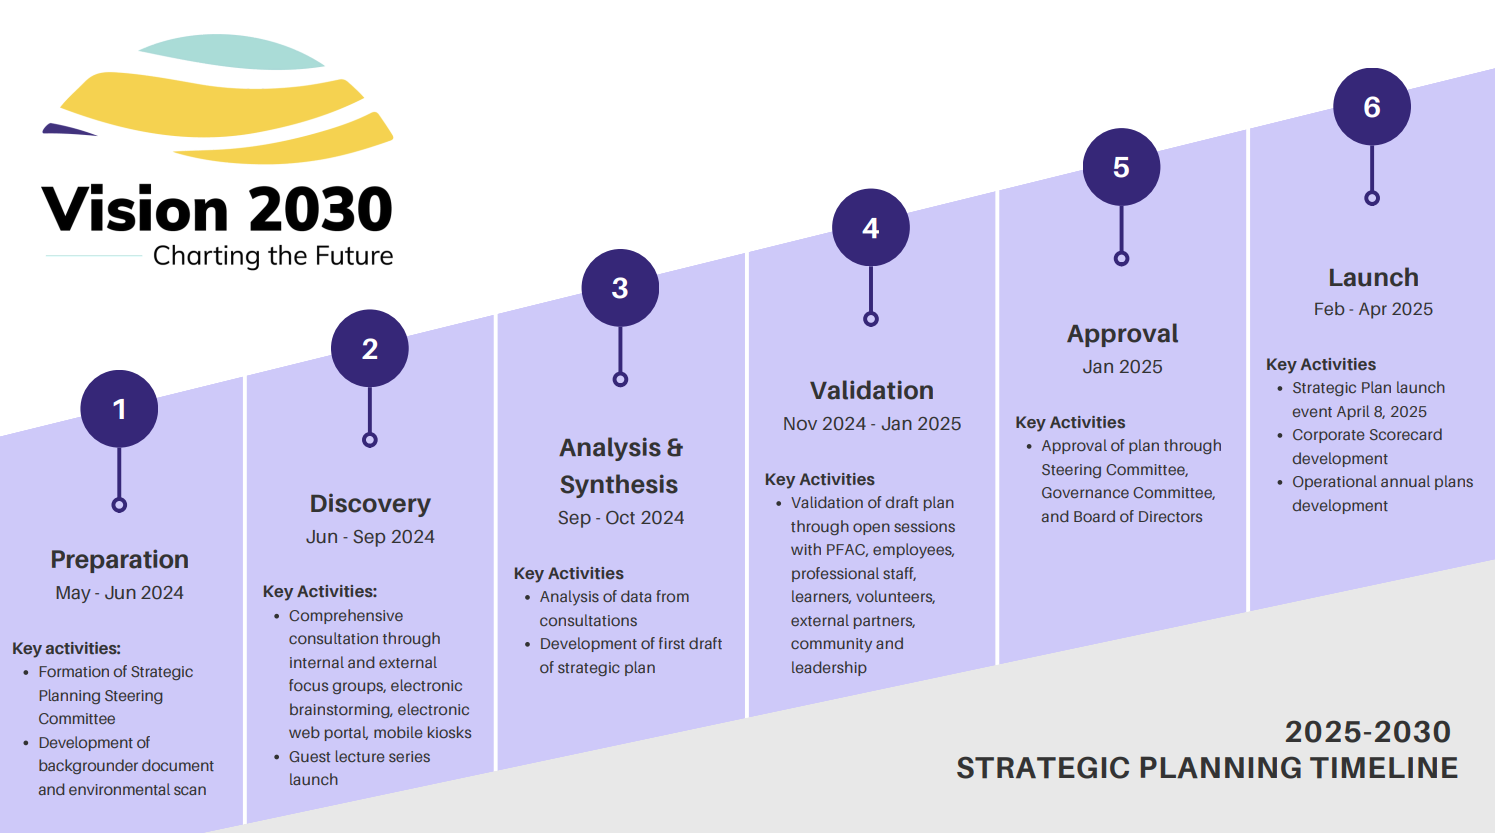 Vision 2030 Strategic Planning Timeline